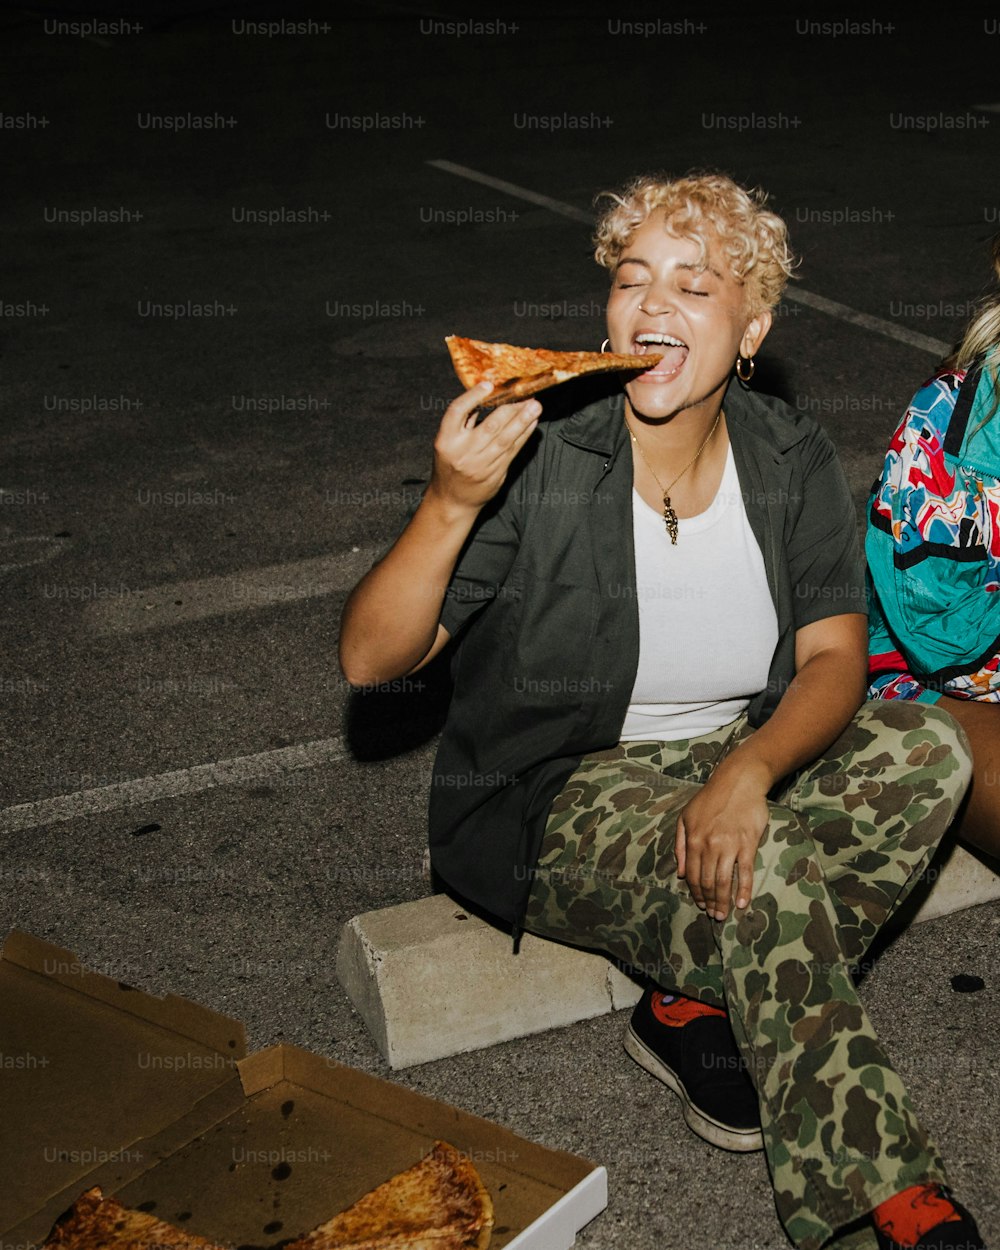 피자 한 조각을 먹고 있는 한 여자